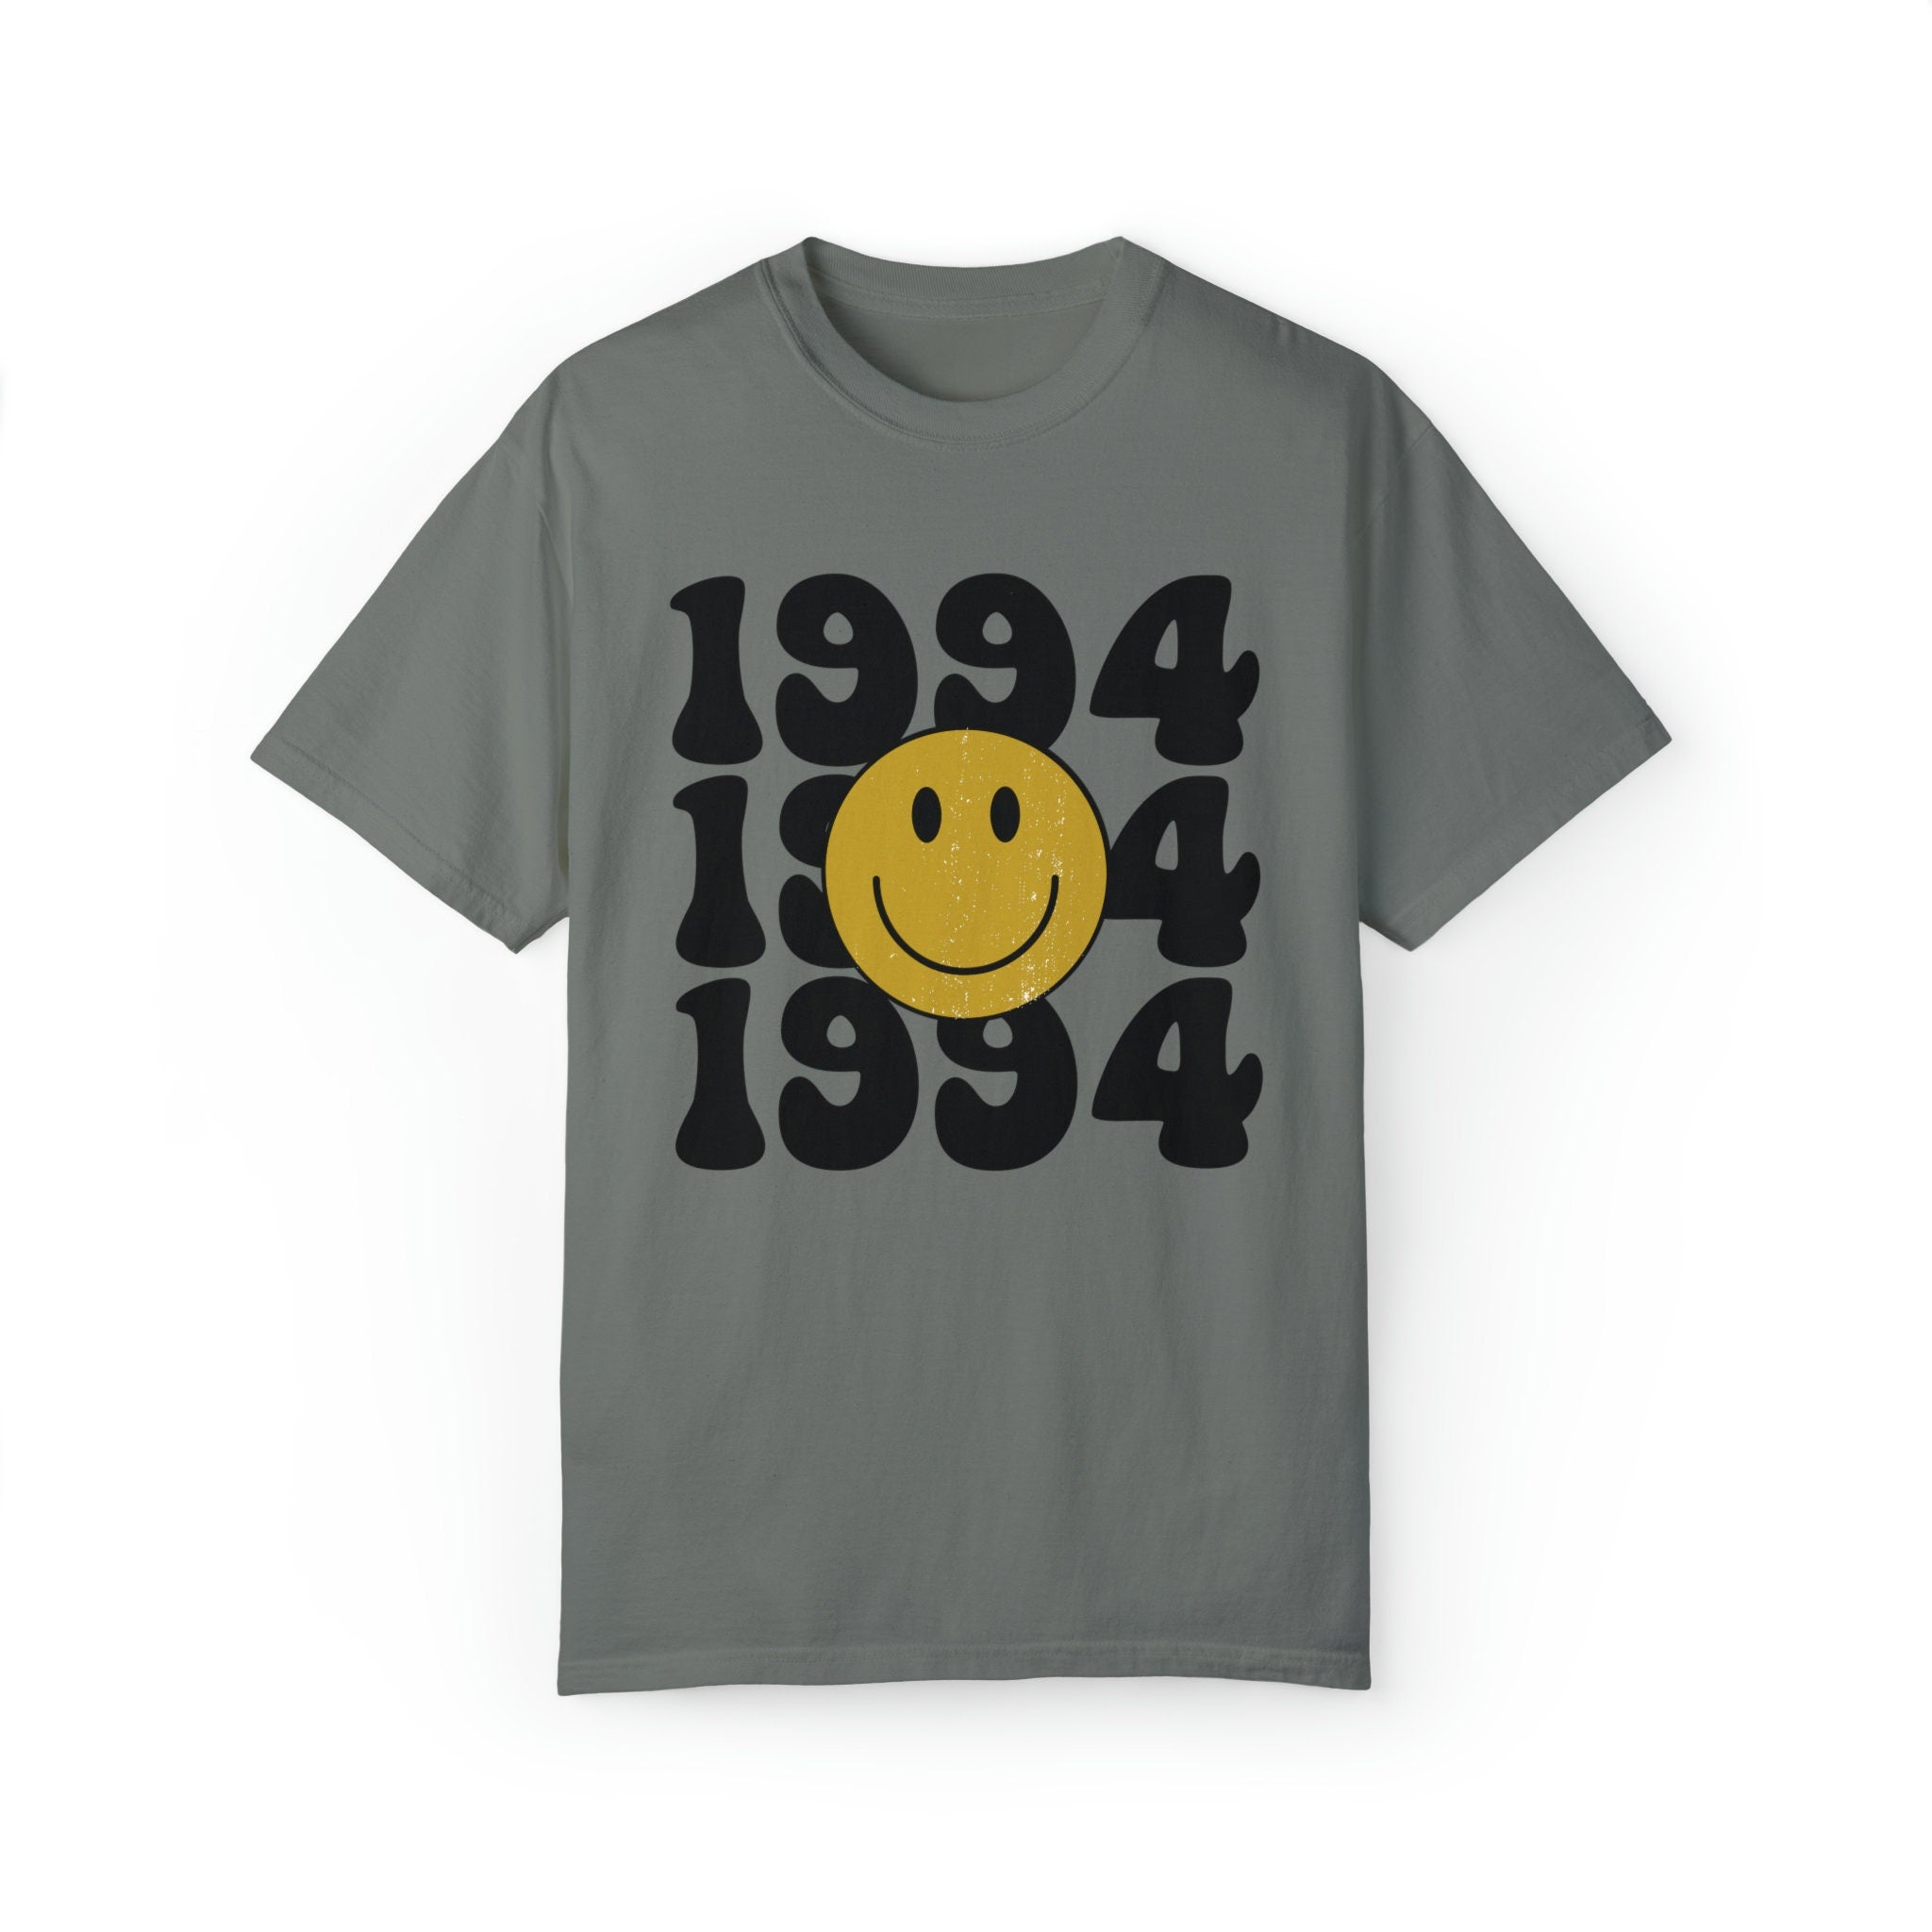 1994 Retro Shirt, Custom 29th Birthday Tshirt, Retro Vintage 29th Birthday 1994 Unisex TShirt 29th Birthday Gift For Her/Him/Them